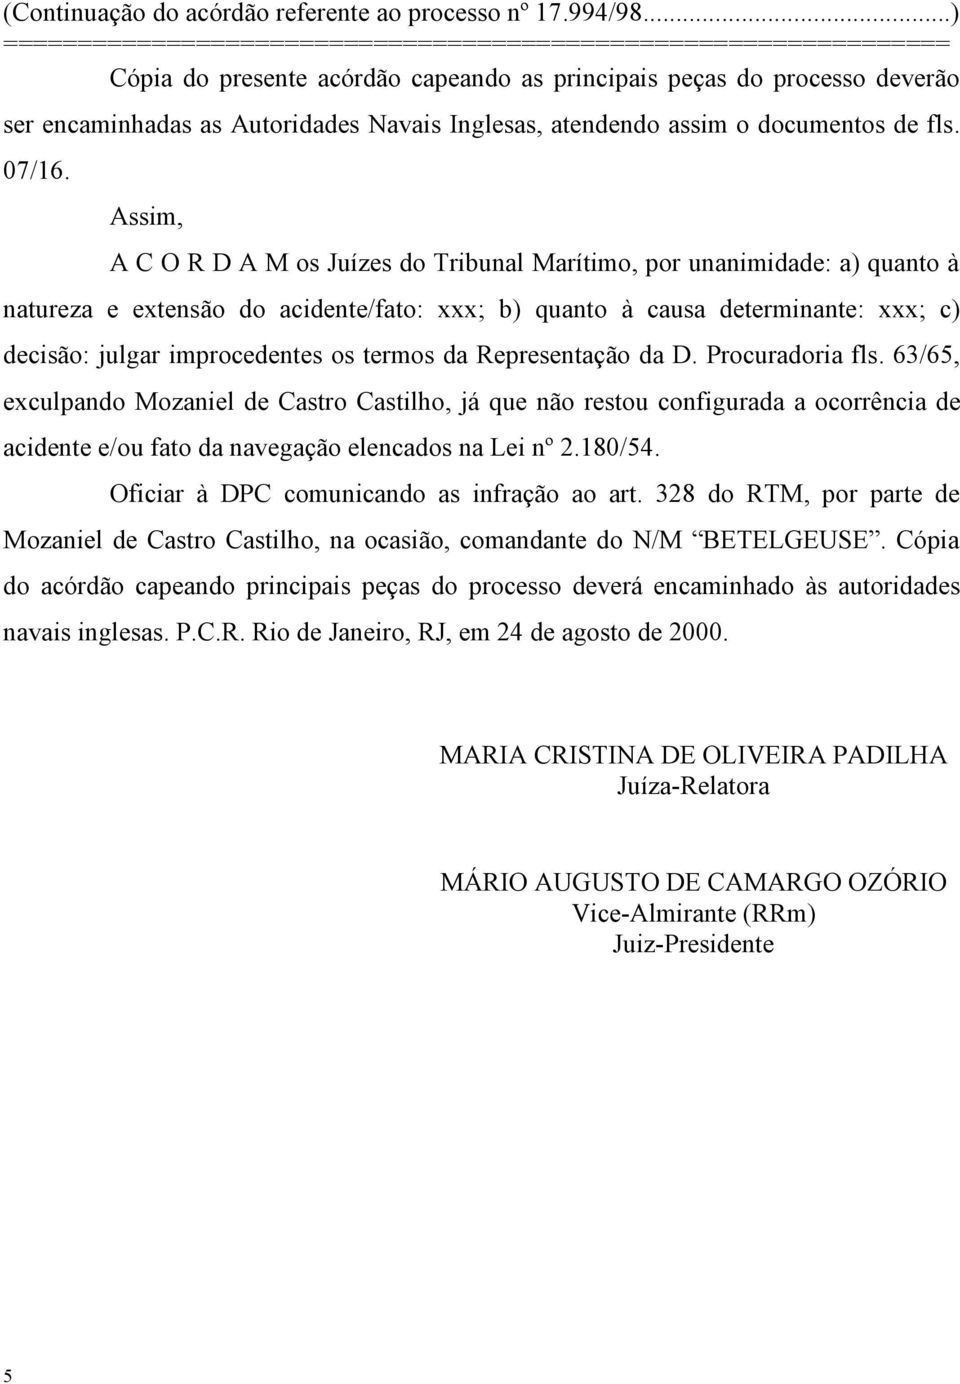 termos da Representação da D. Procuradoria fls. 63/65, exculpando Mozaniel de Castro Castilho, já que não restou configurada a ocorrência de acidente e/ou fato da navegação elencados na Lei nº 2.